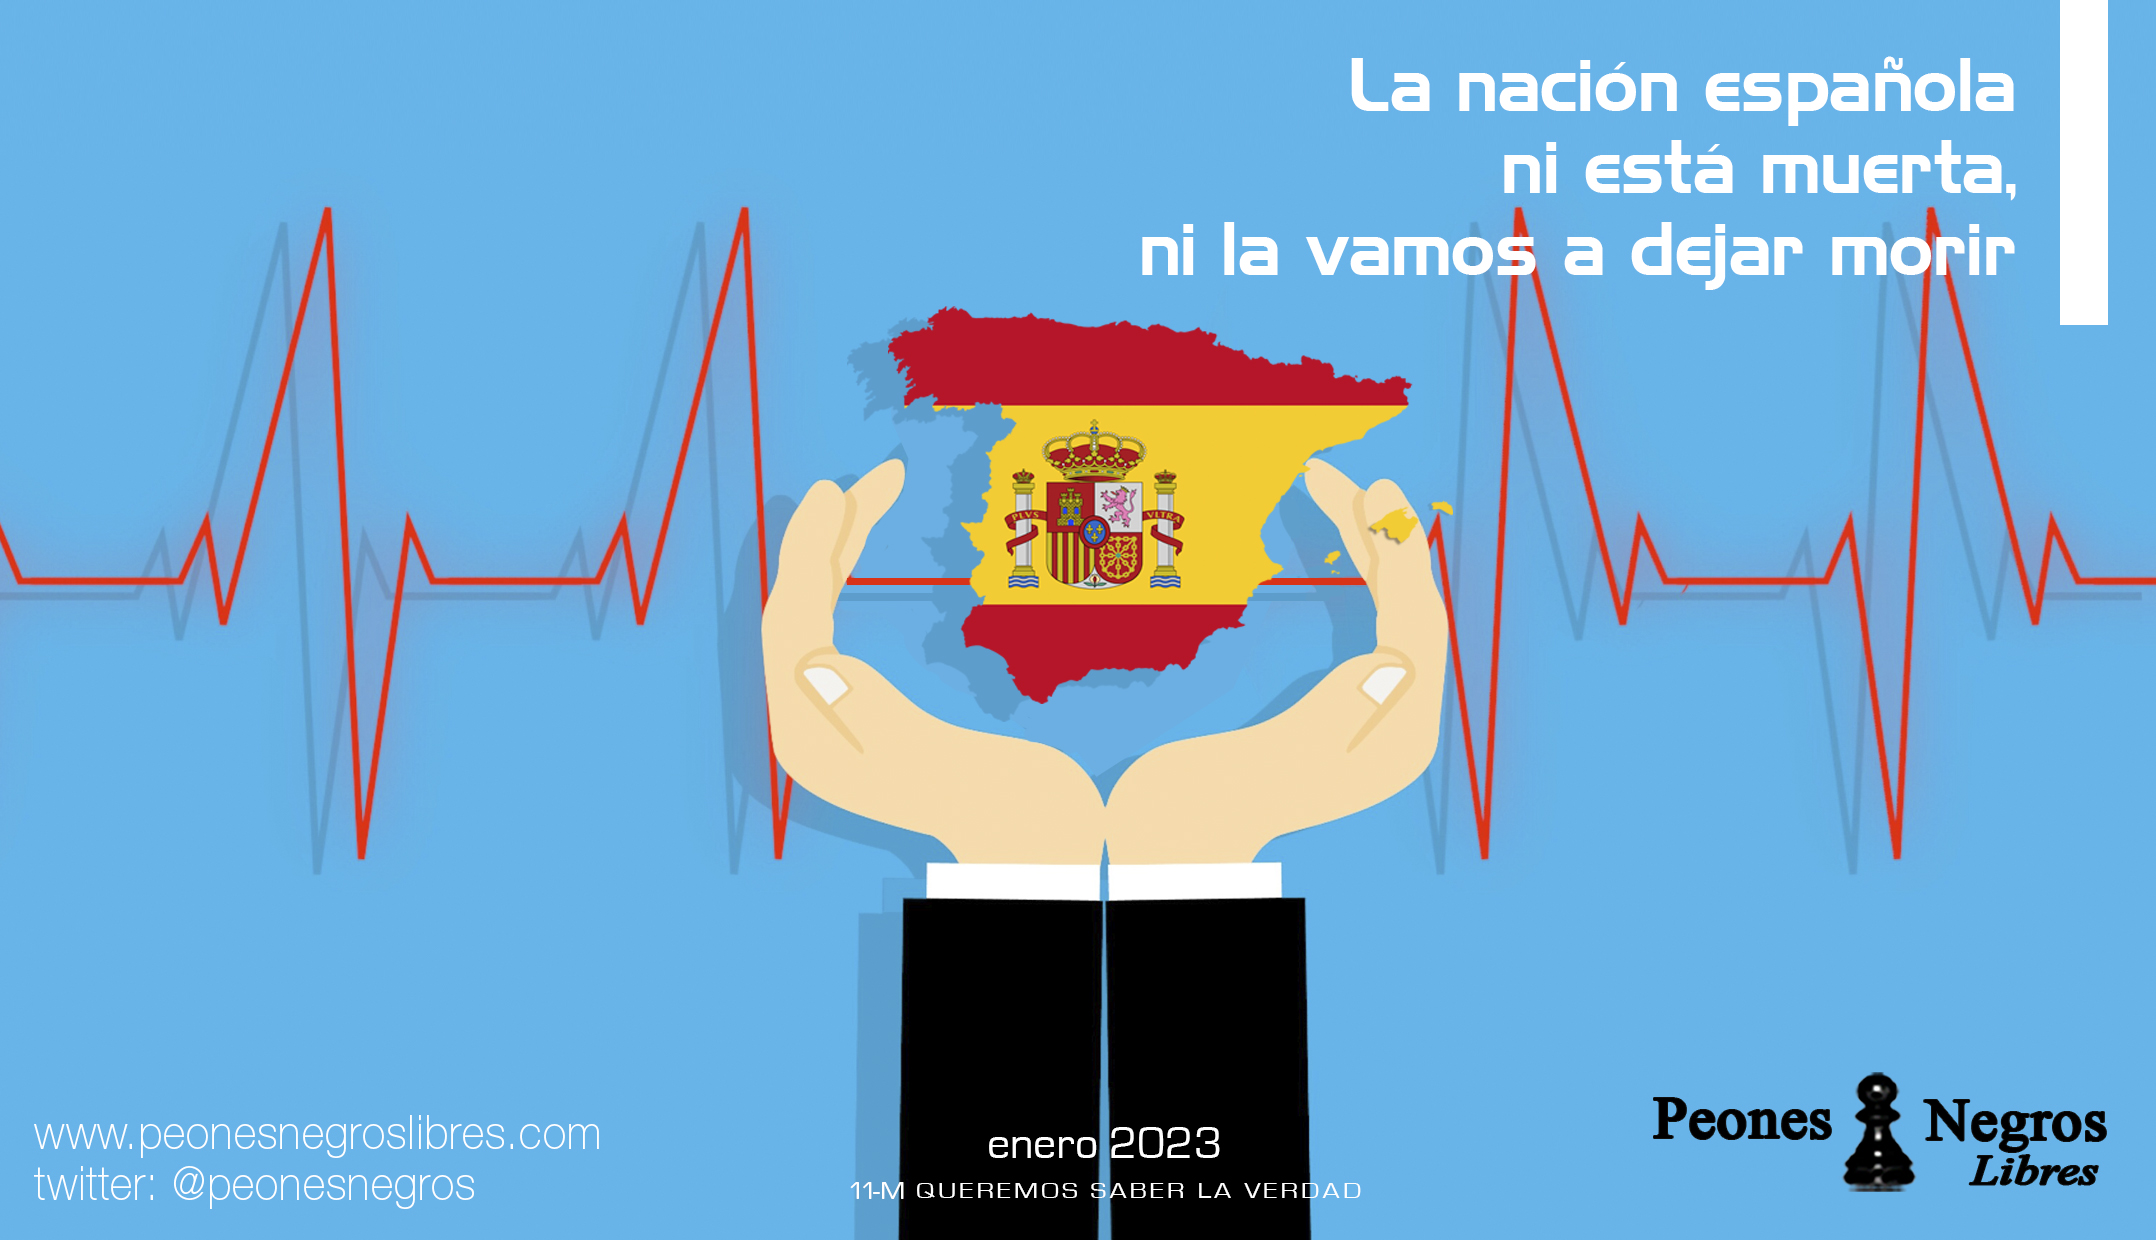 11 de enero de 2023: "La nación española ni está muerta ni la vamos a dejar morir".